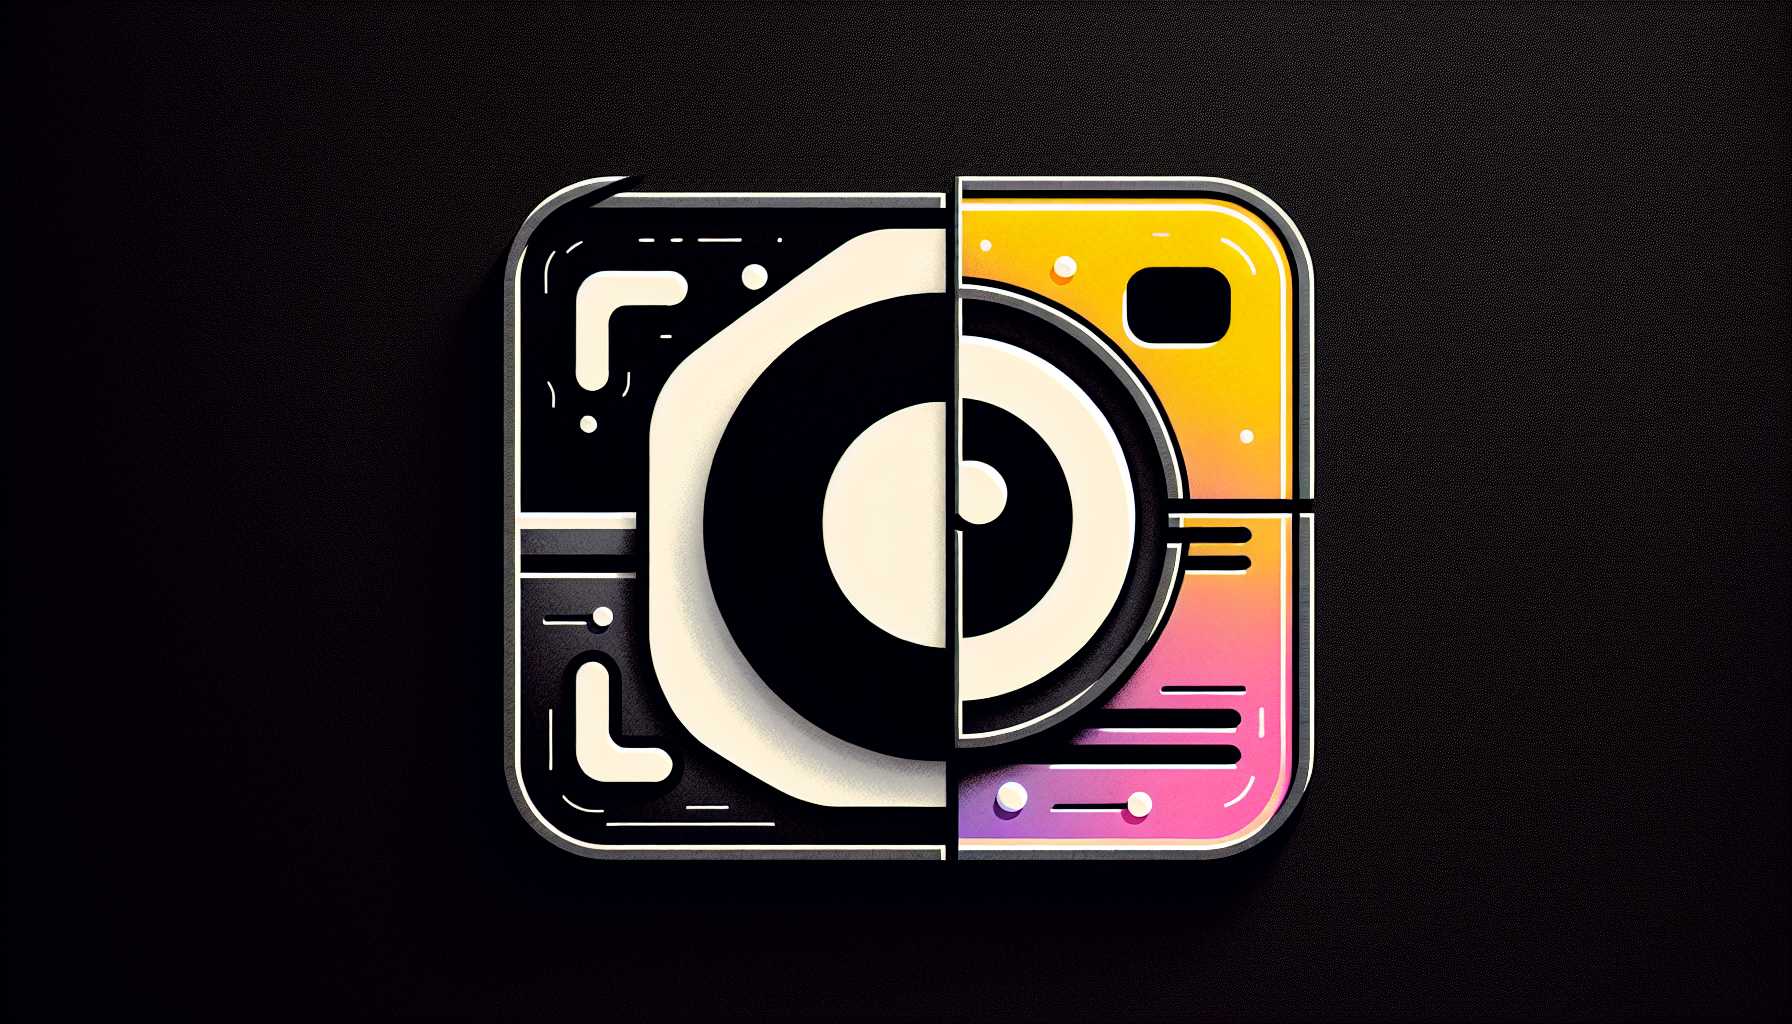 TikTok and Instagram logos clashing